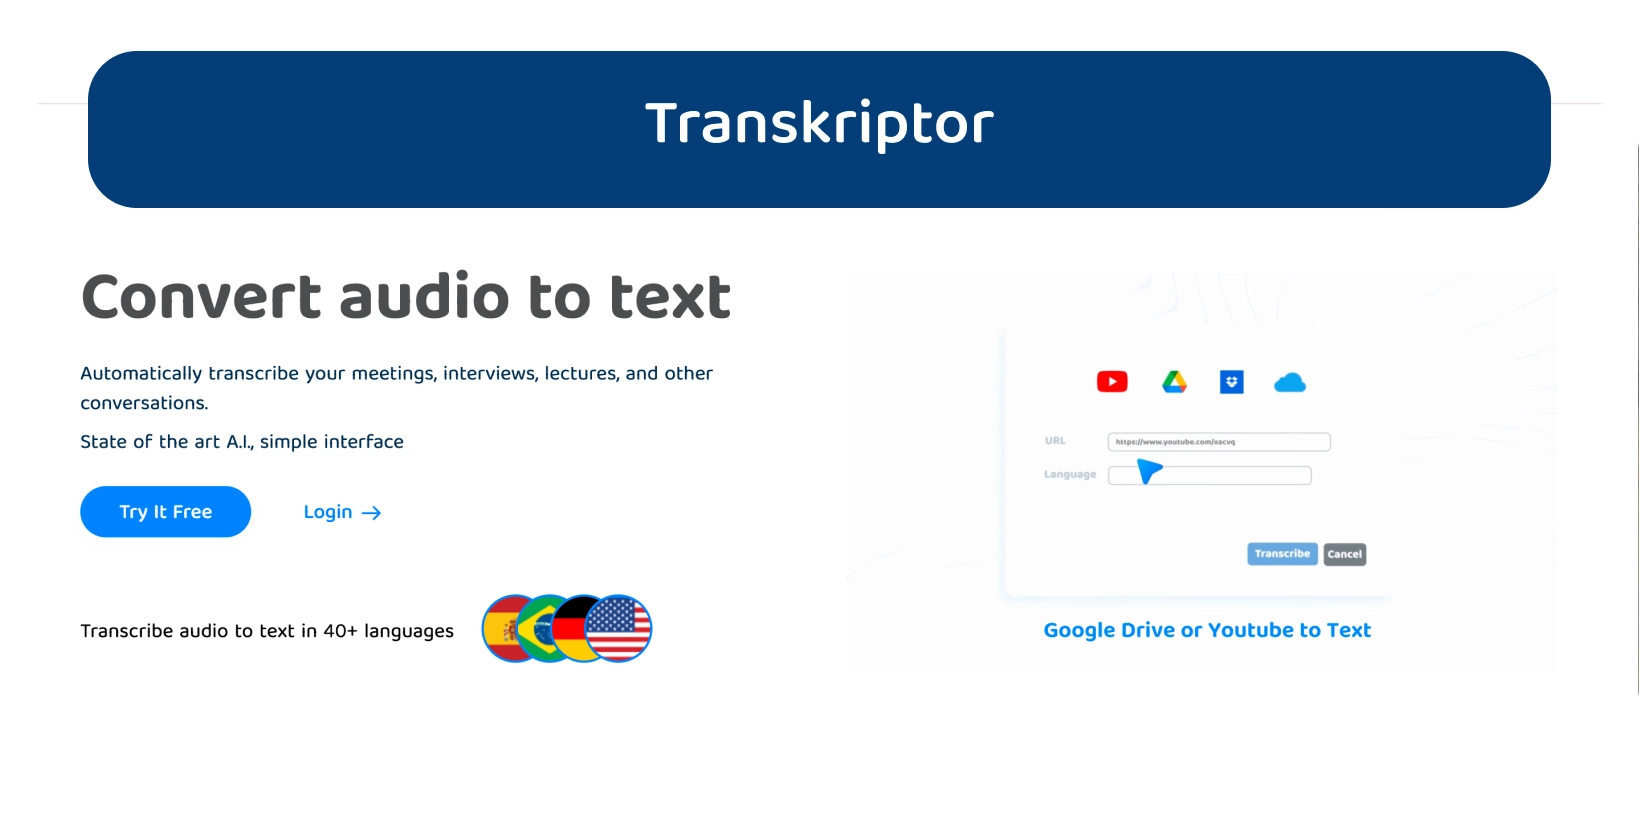 Papan pemuka Transkriptor mempamerkan ciri penukaran audio ke teks untuk transkripsi yang cekap.